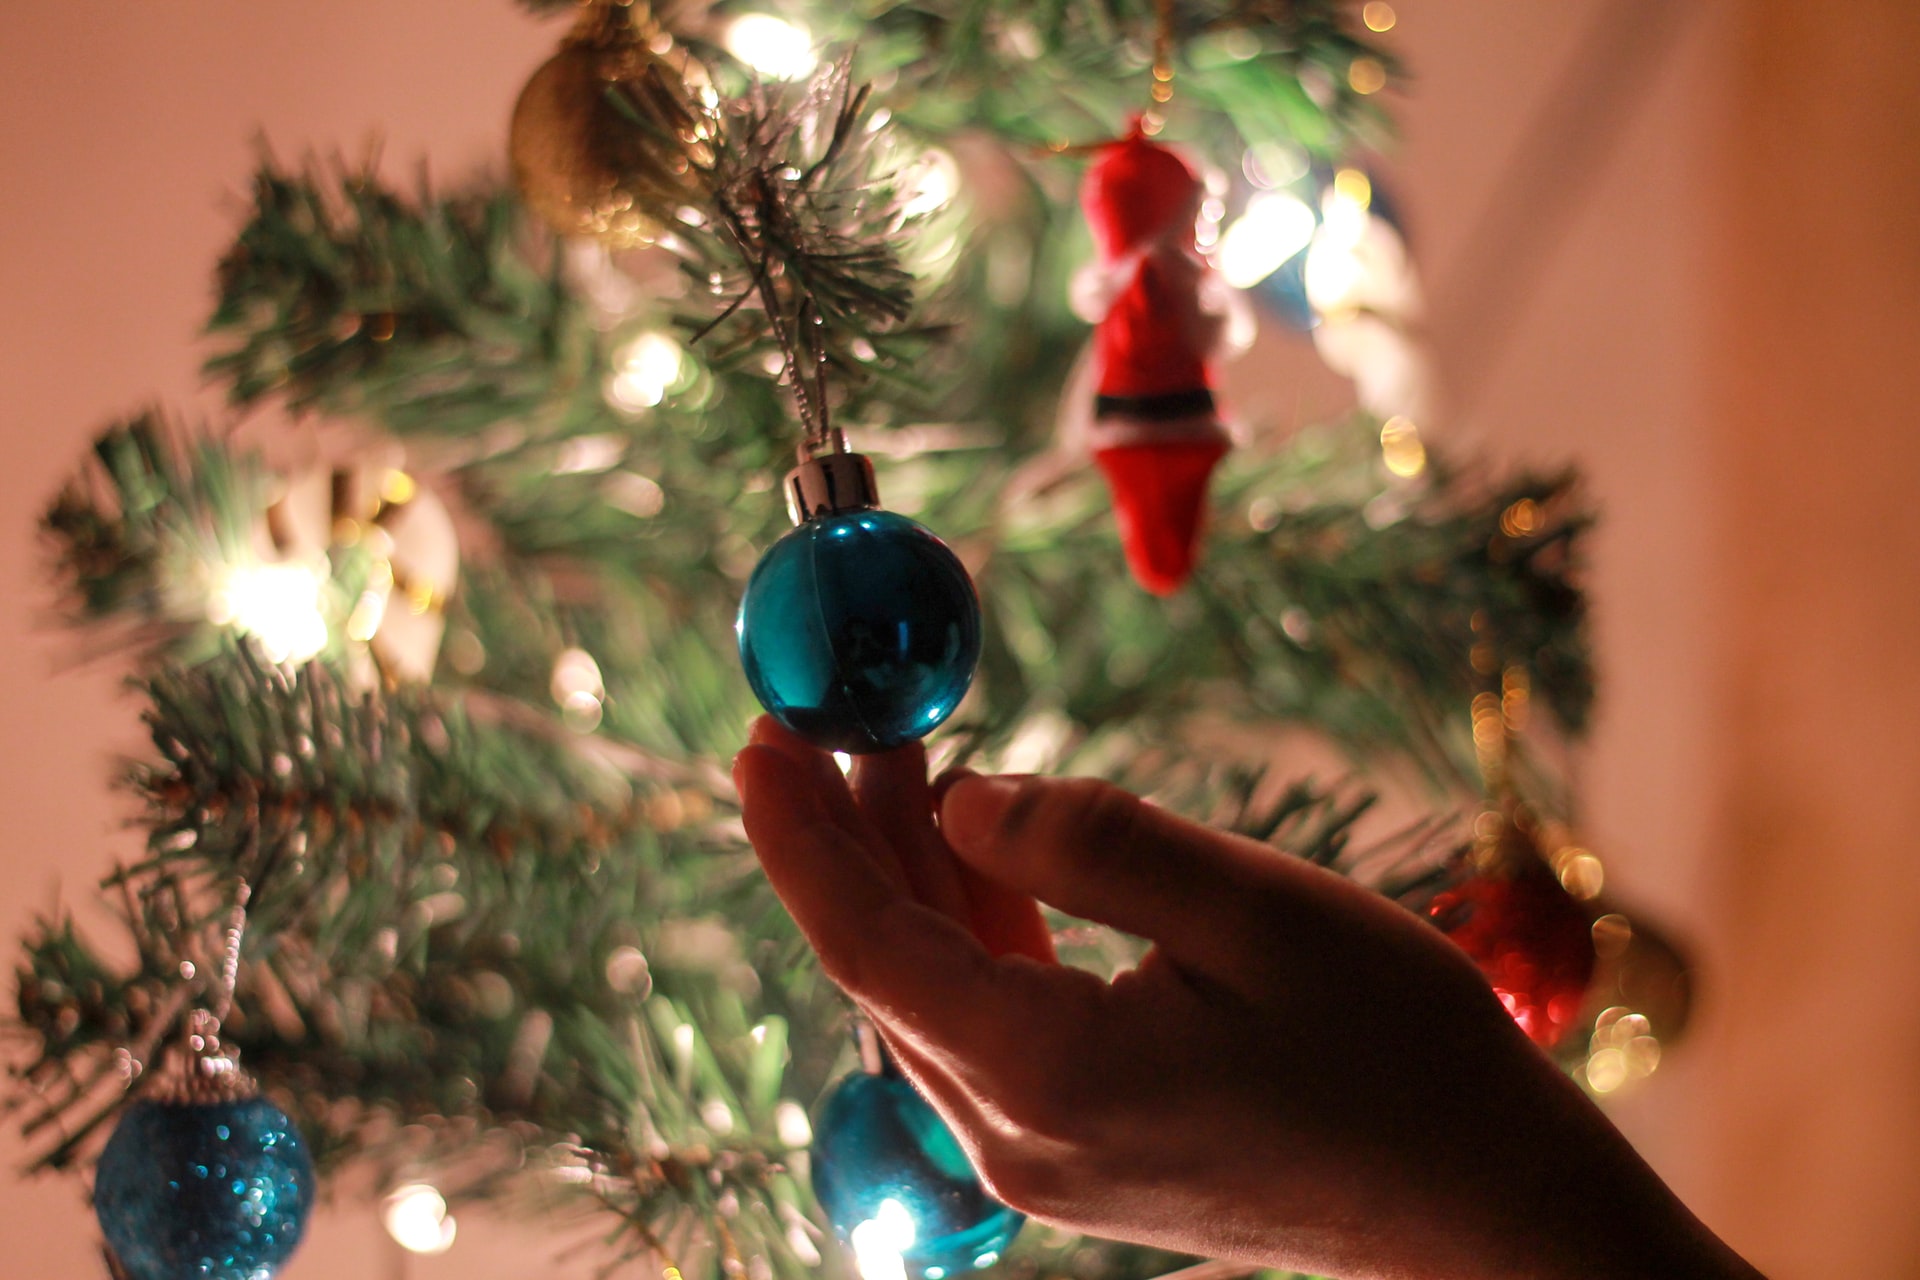 Foto Principal: La decoración navideña refleja la personalidad y entusiasmo por las fiestas de fin de año, según los expertos. (Foto Prensa Libre: Aswathy N on Unsplash).